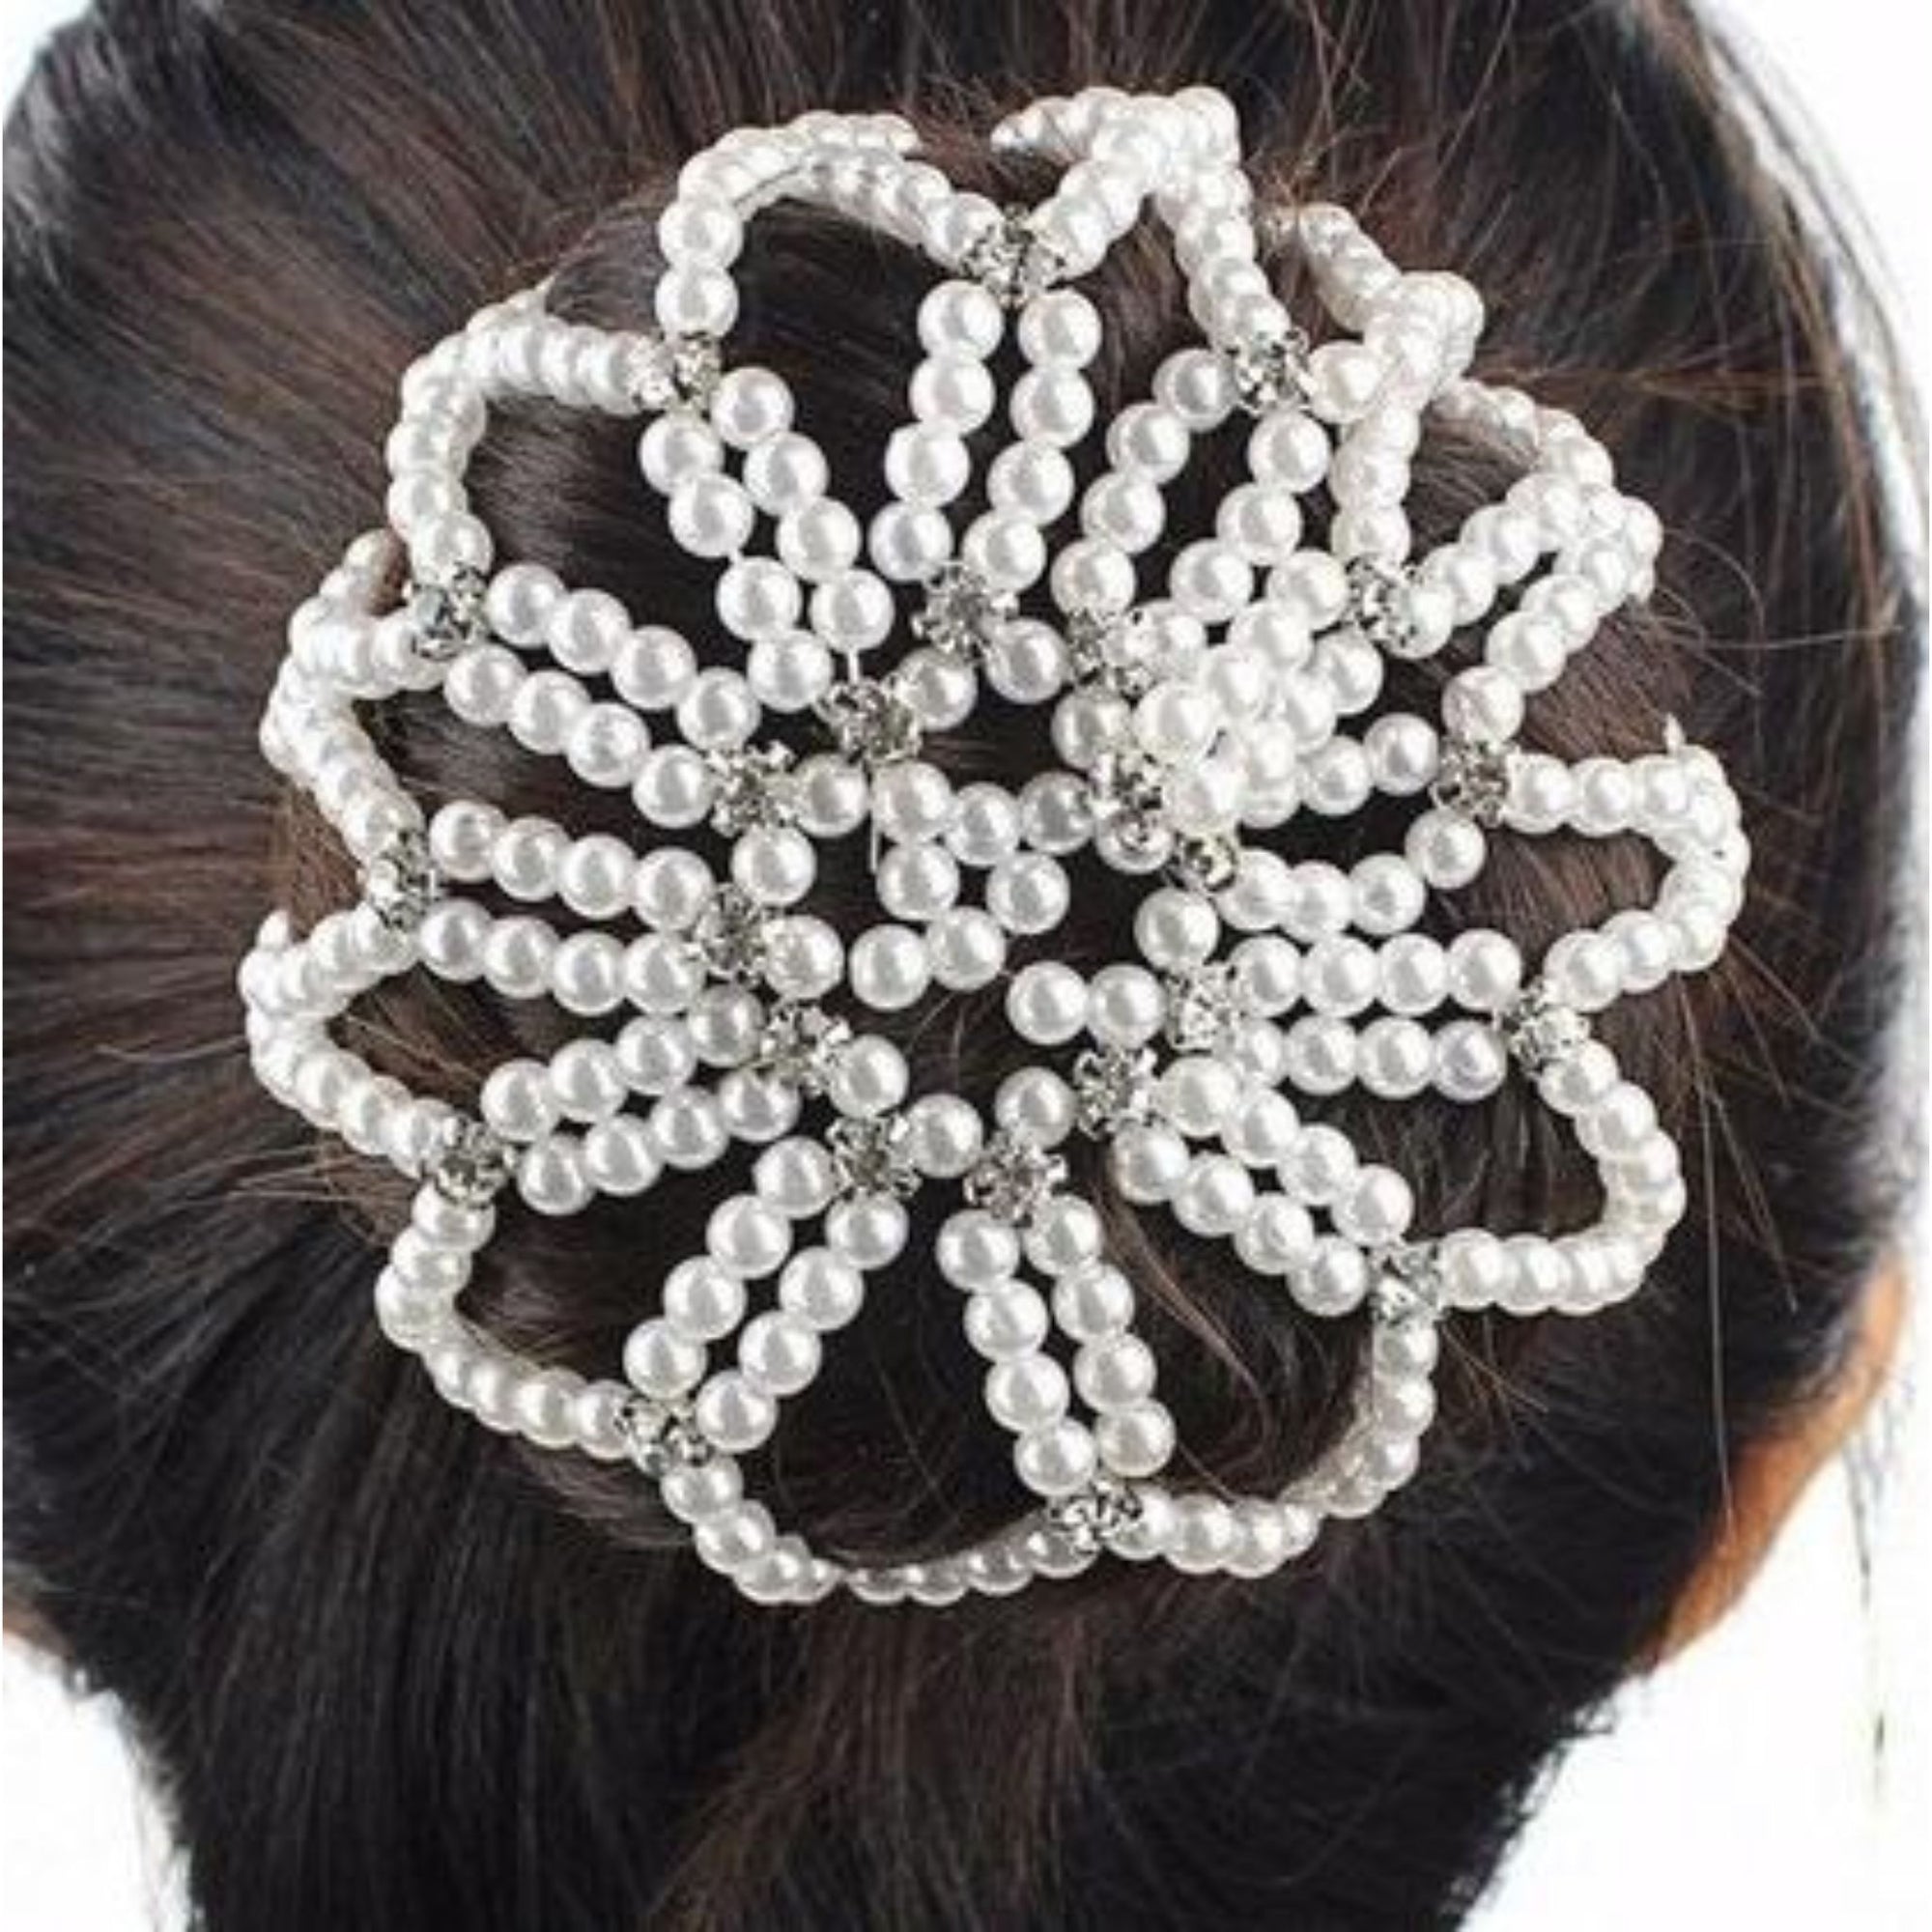 White Diamante Pearl Hairnet In Hair.